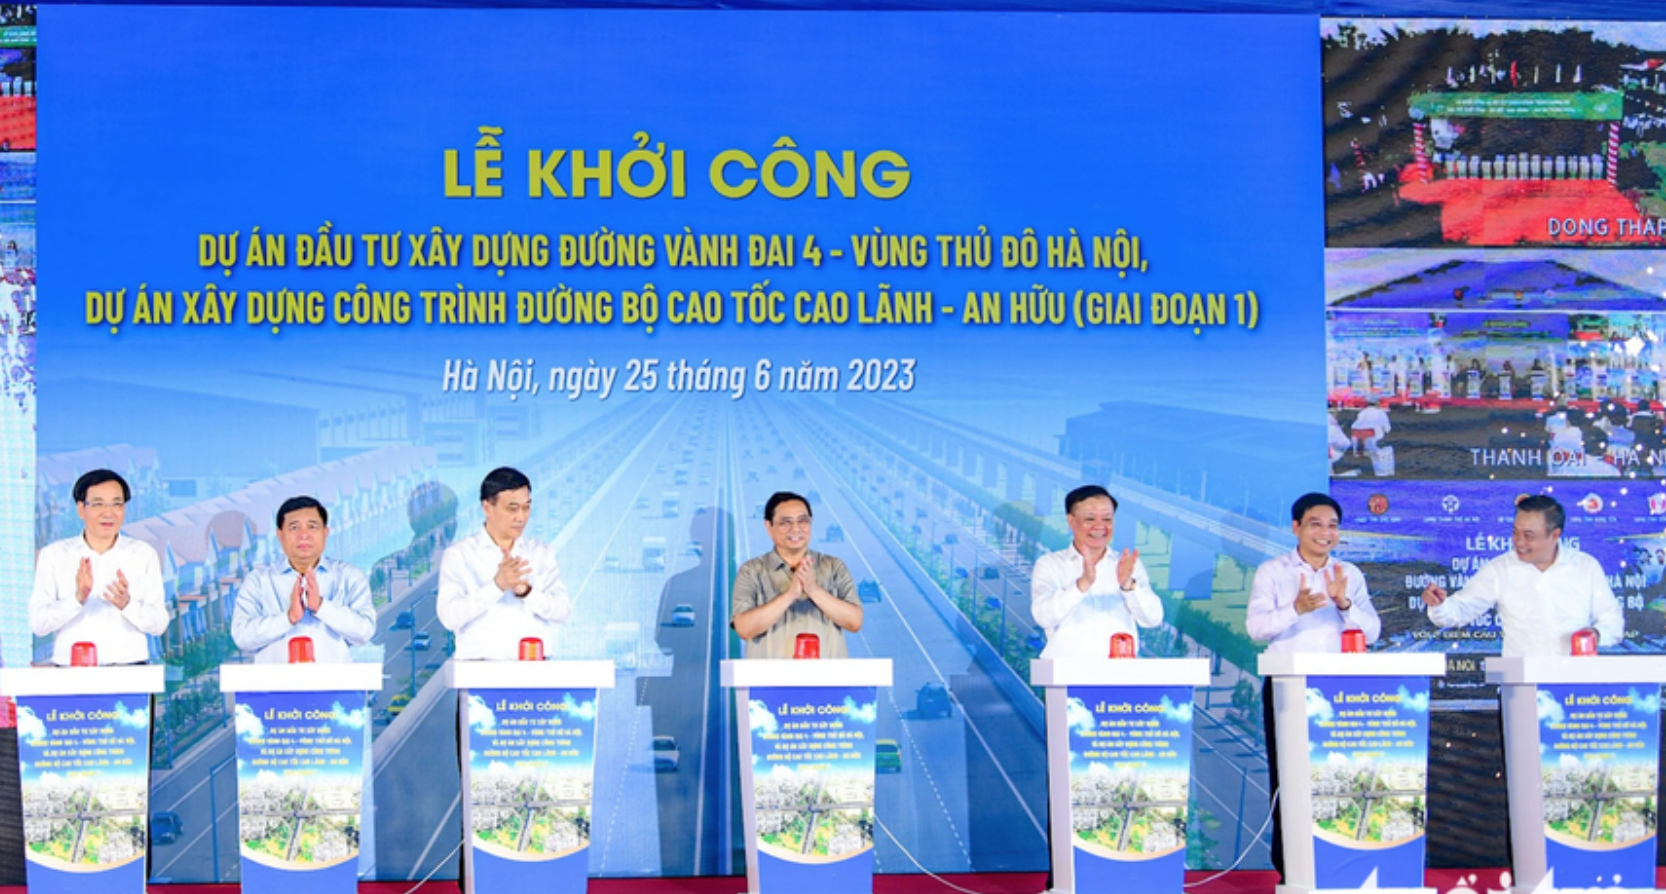 Thủ tướng Phạm Minh Chính cùng các đại biểu nhấn nút khởi công dự án đầu tư xây dựng đường Vành đai 4 - Vùng Thủ đô Hà Nội. Ảnh: Hùng Khang.